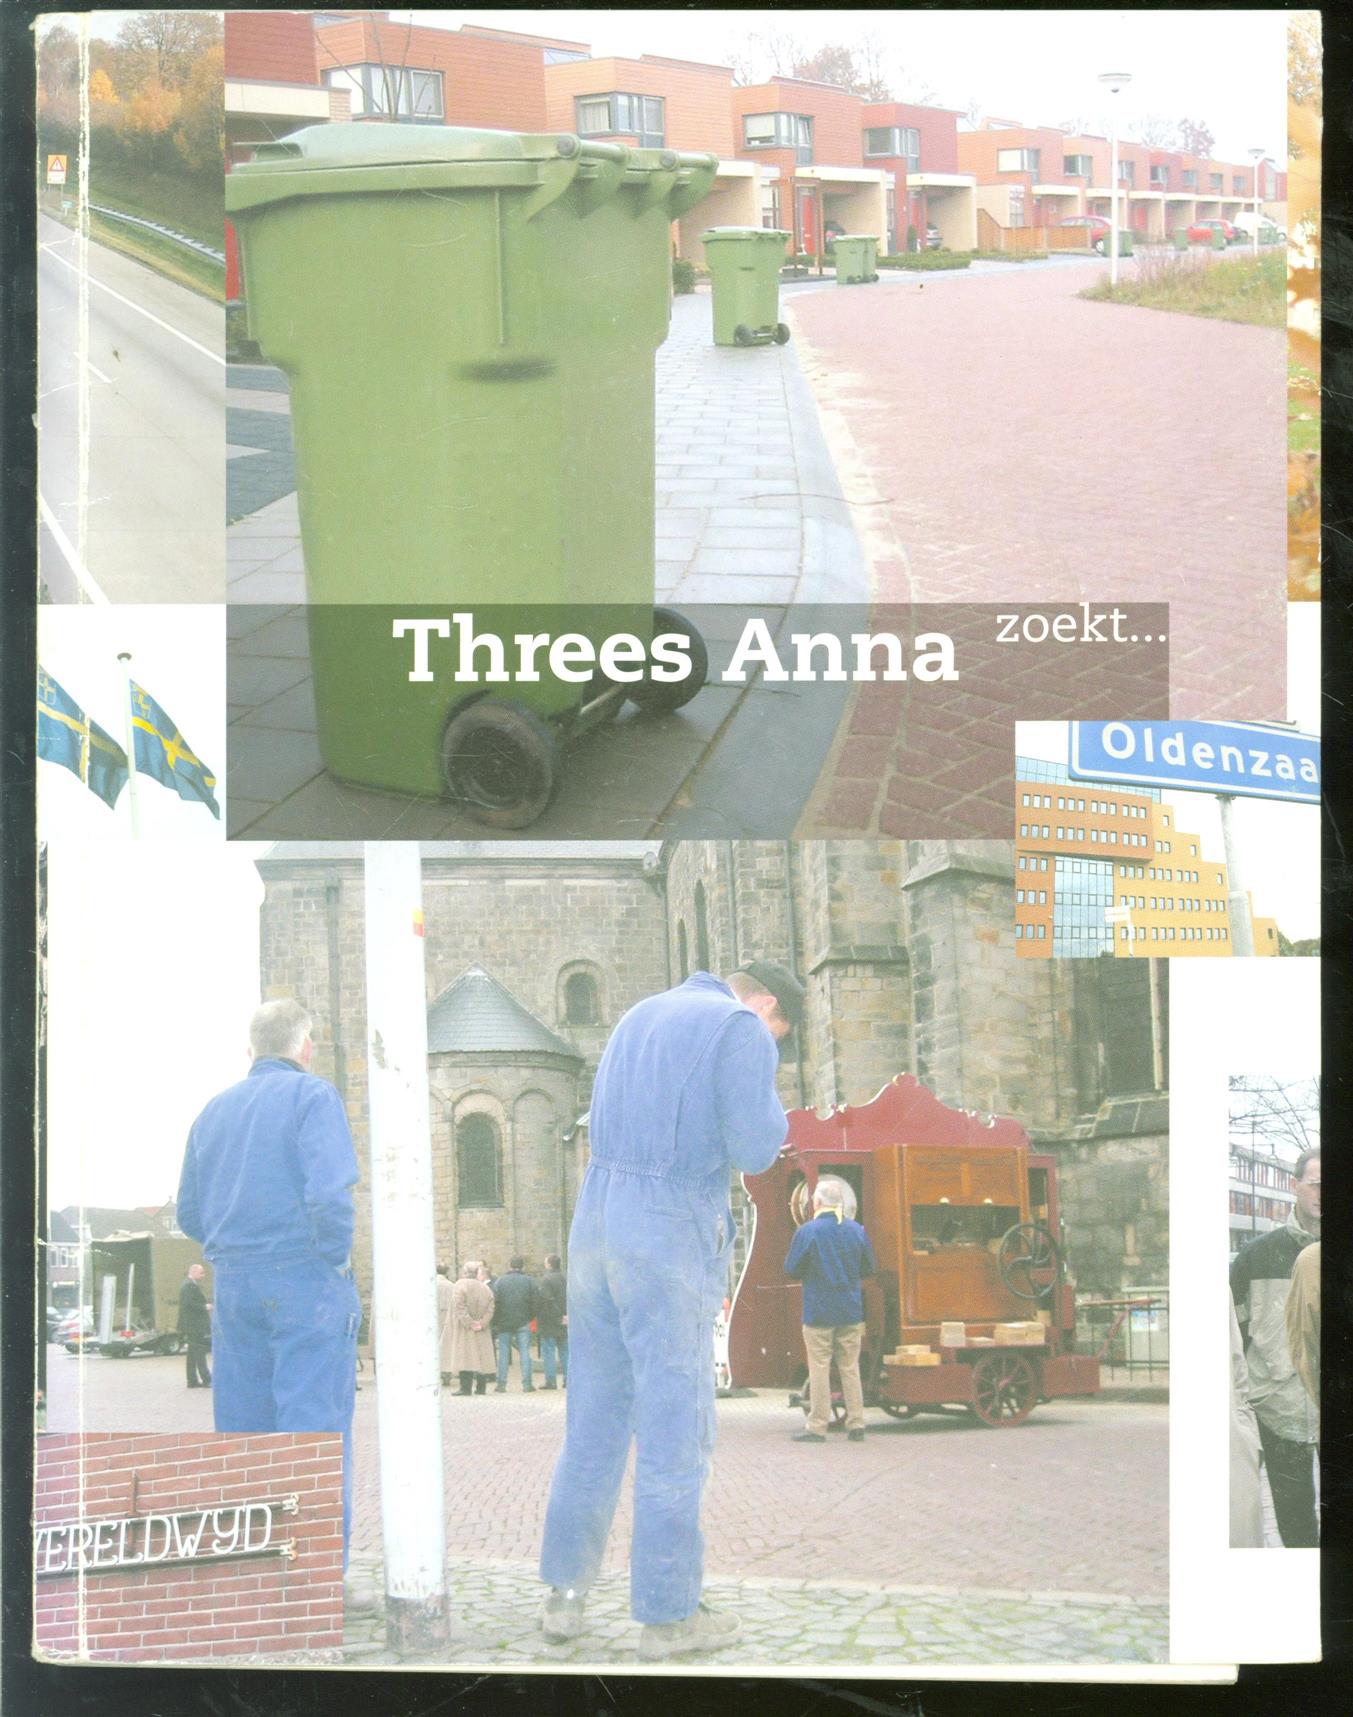 Anna, Threes - Threes Anna zoekt. De identiteit van Oldenzaal in 25 colums